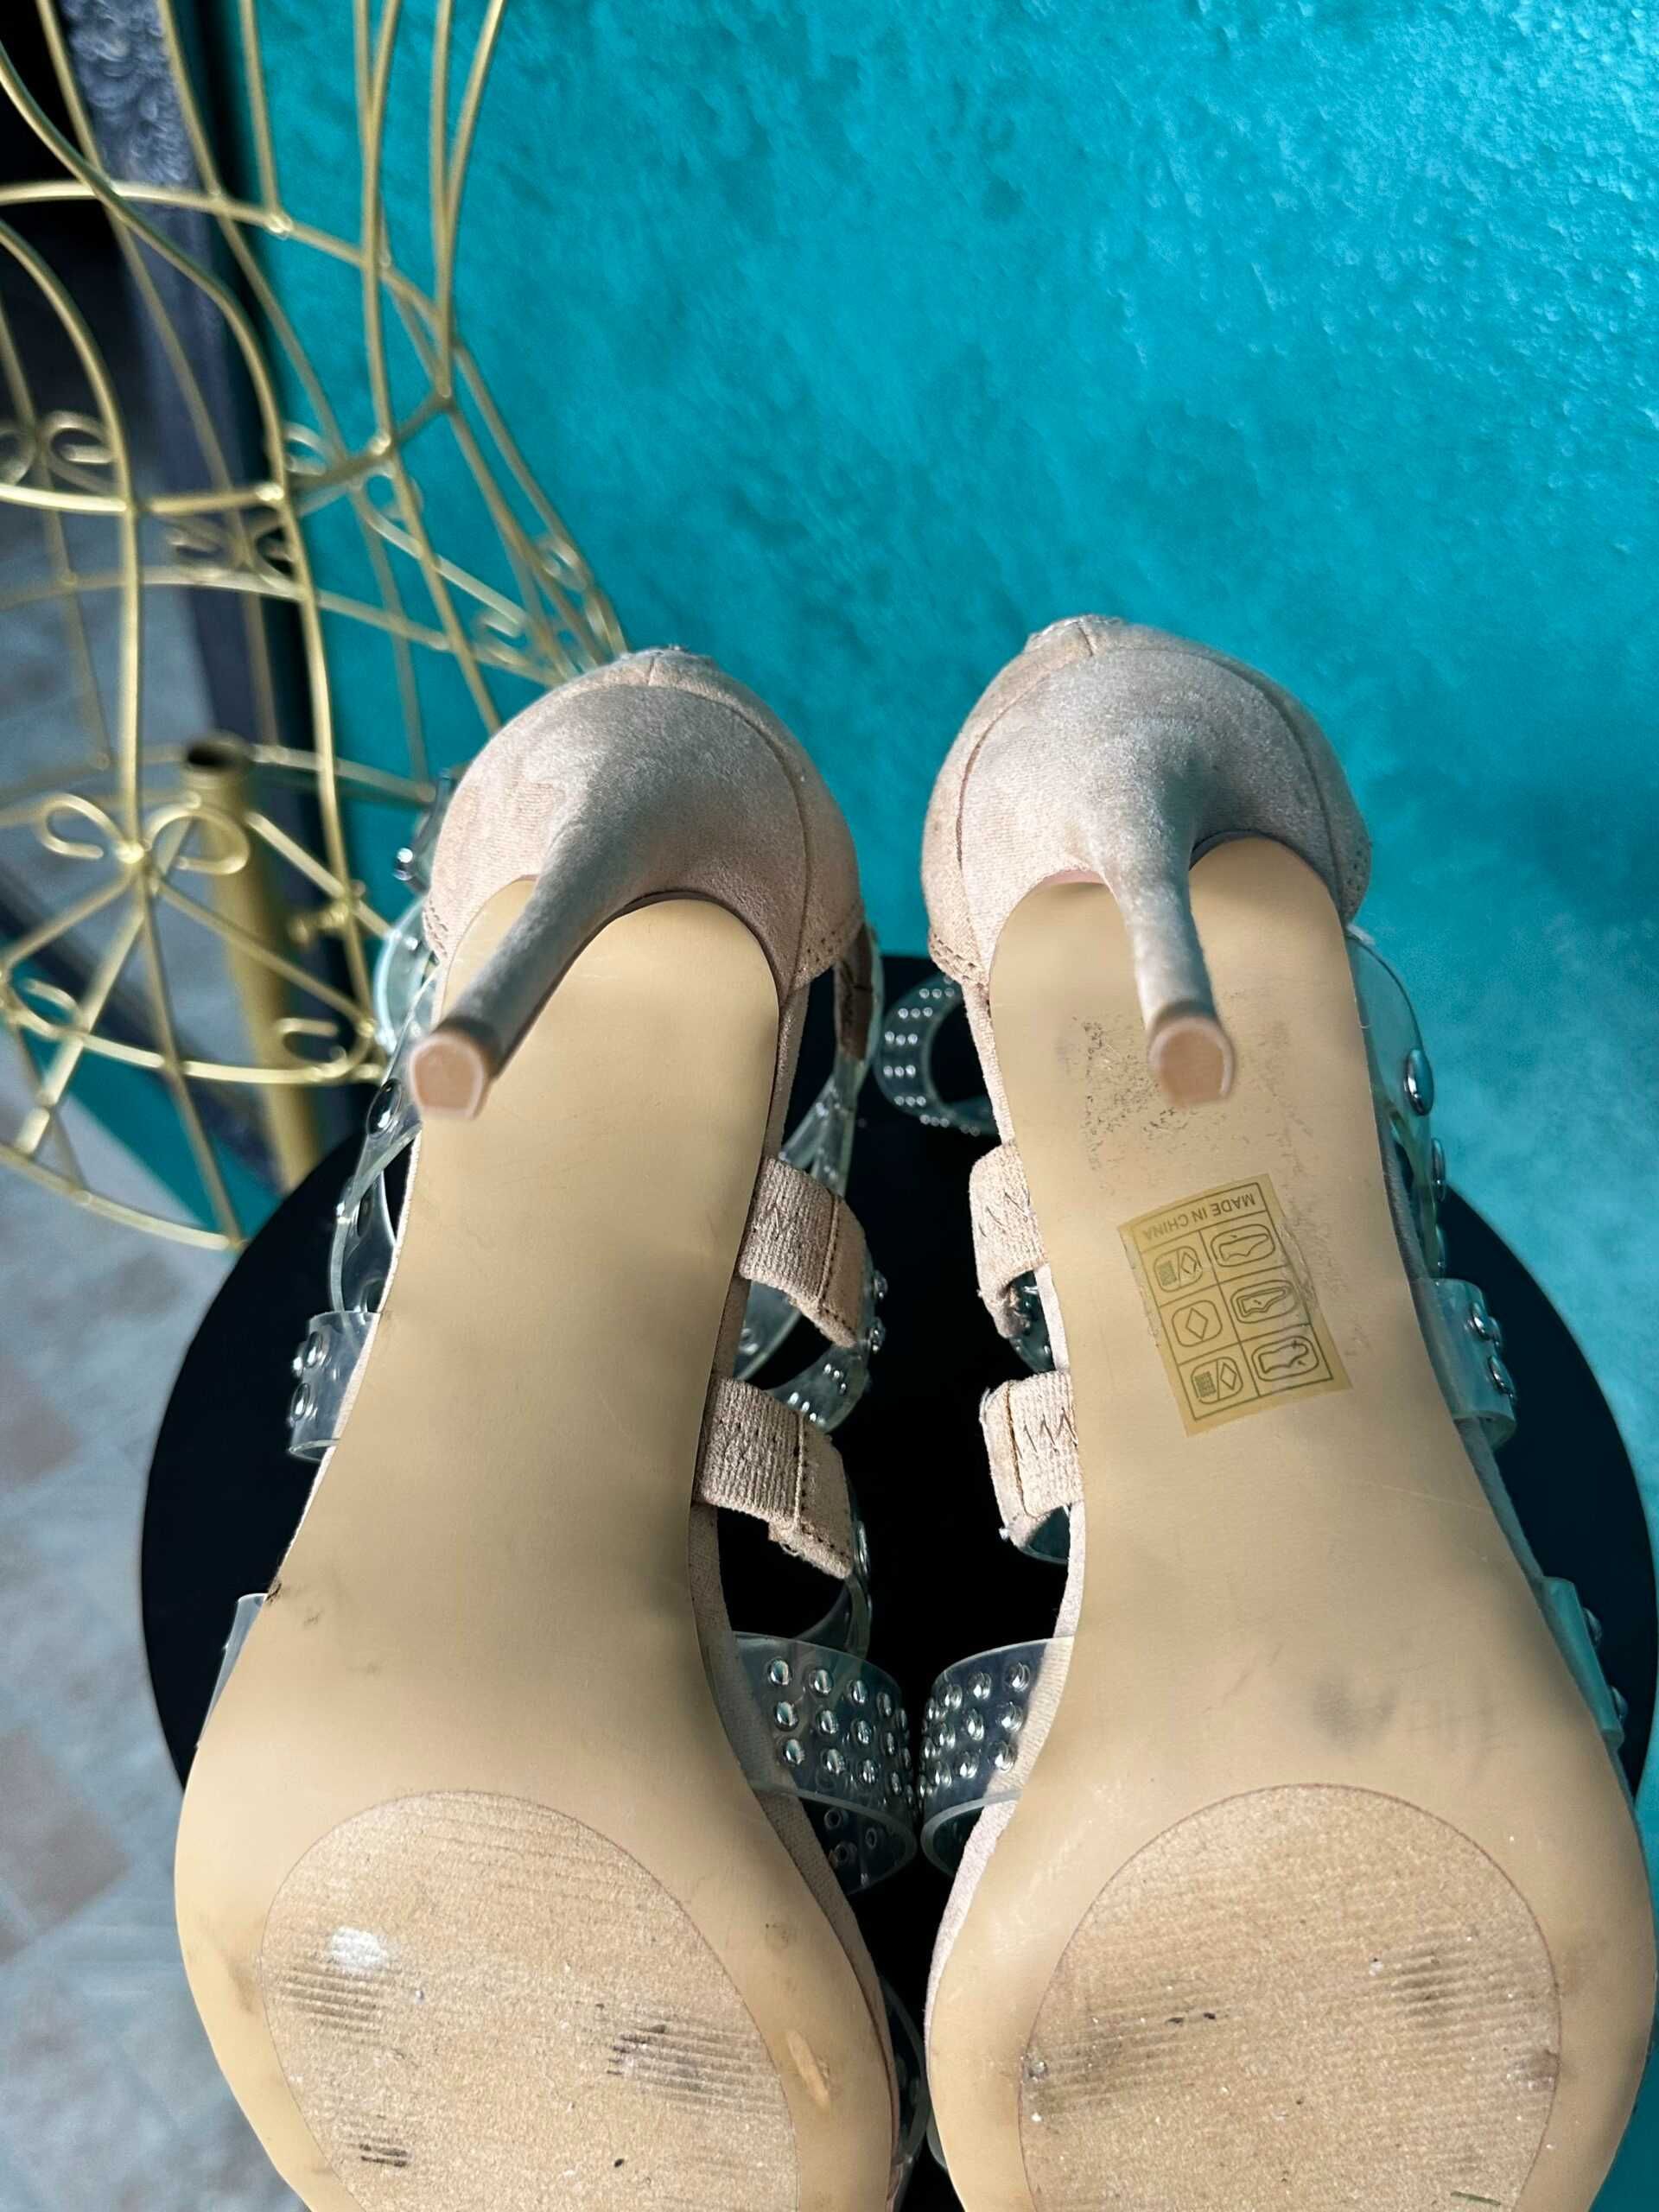 Sandale marca Steve Madden, crem cu inserții argintii, mărimea 38